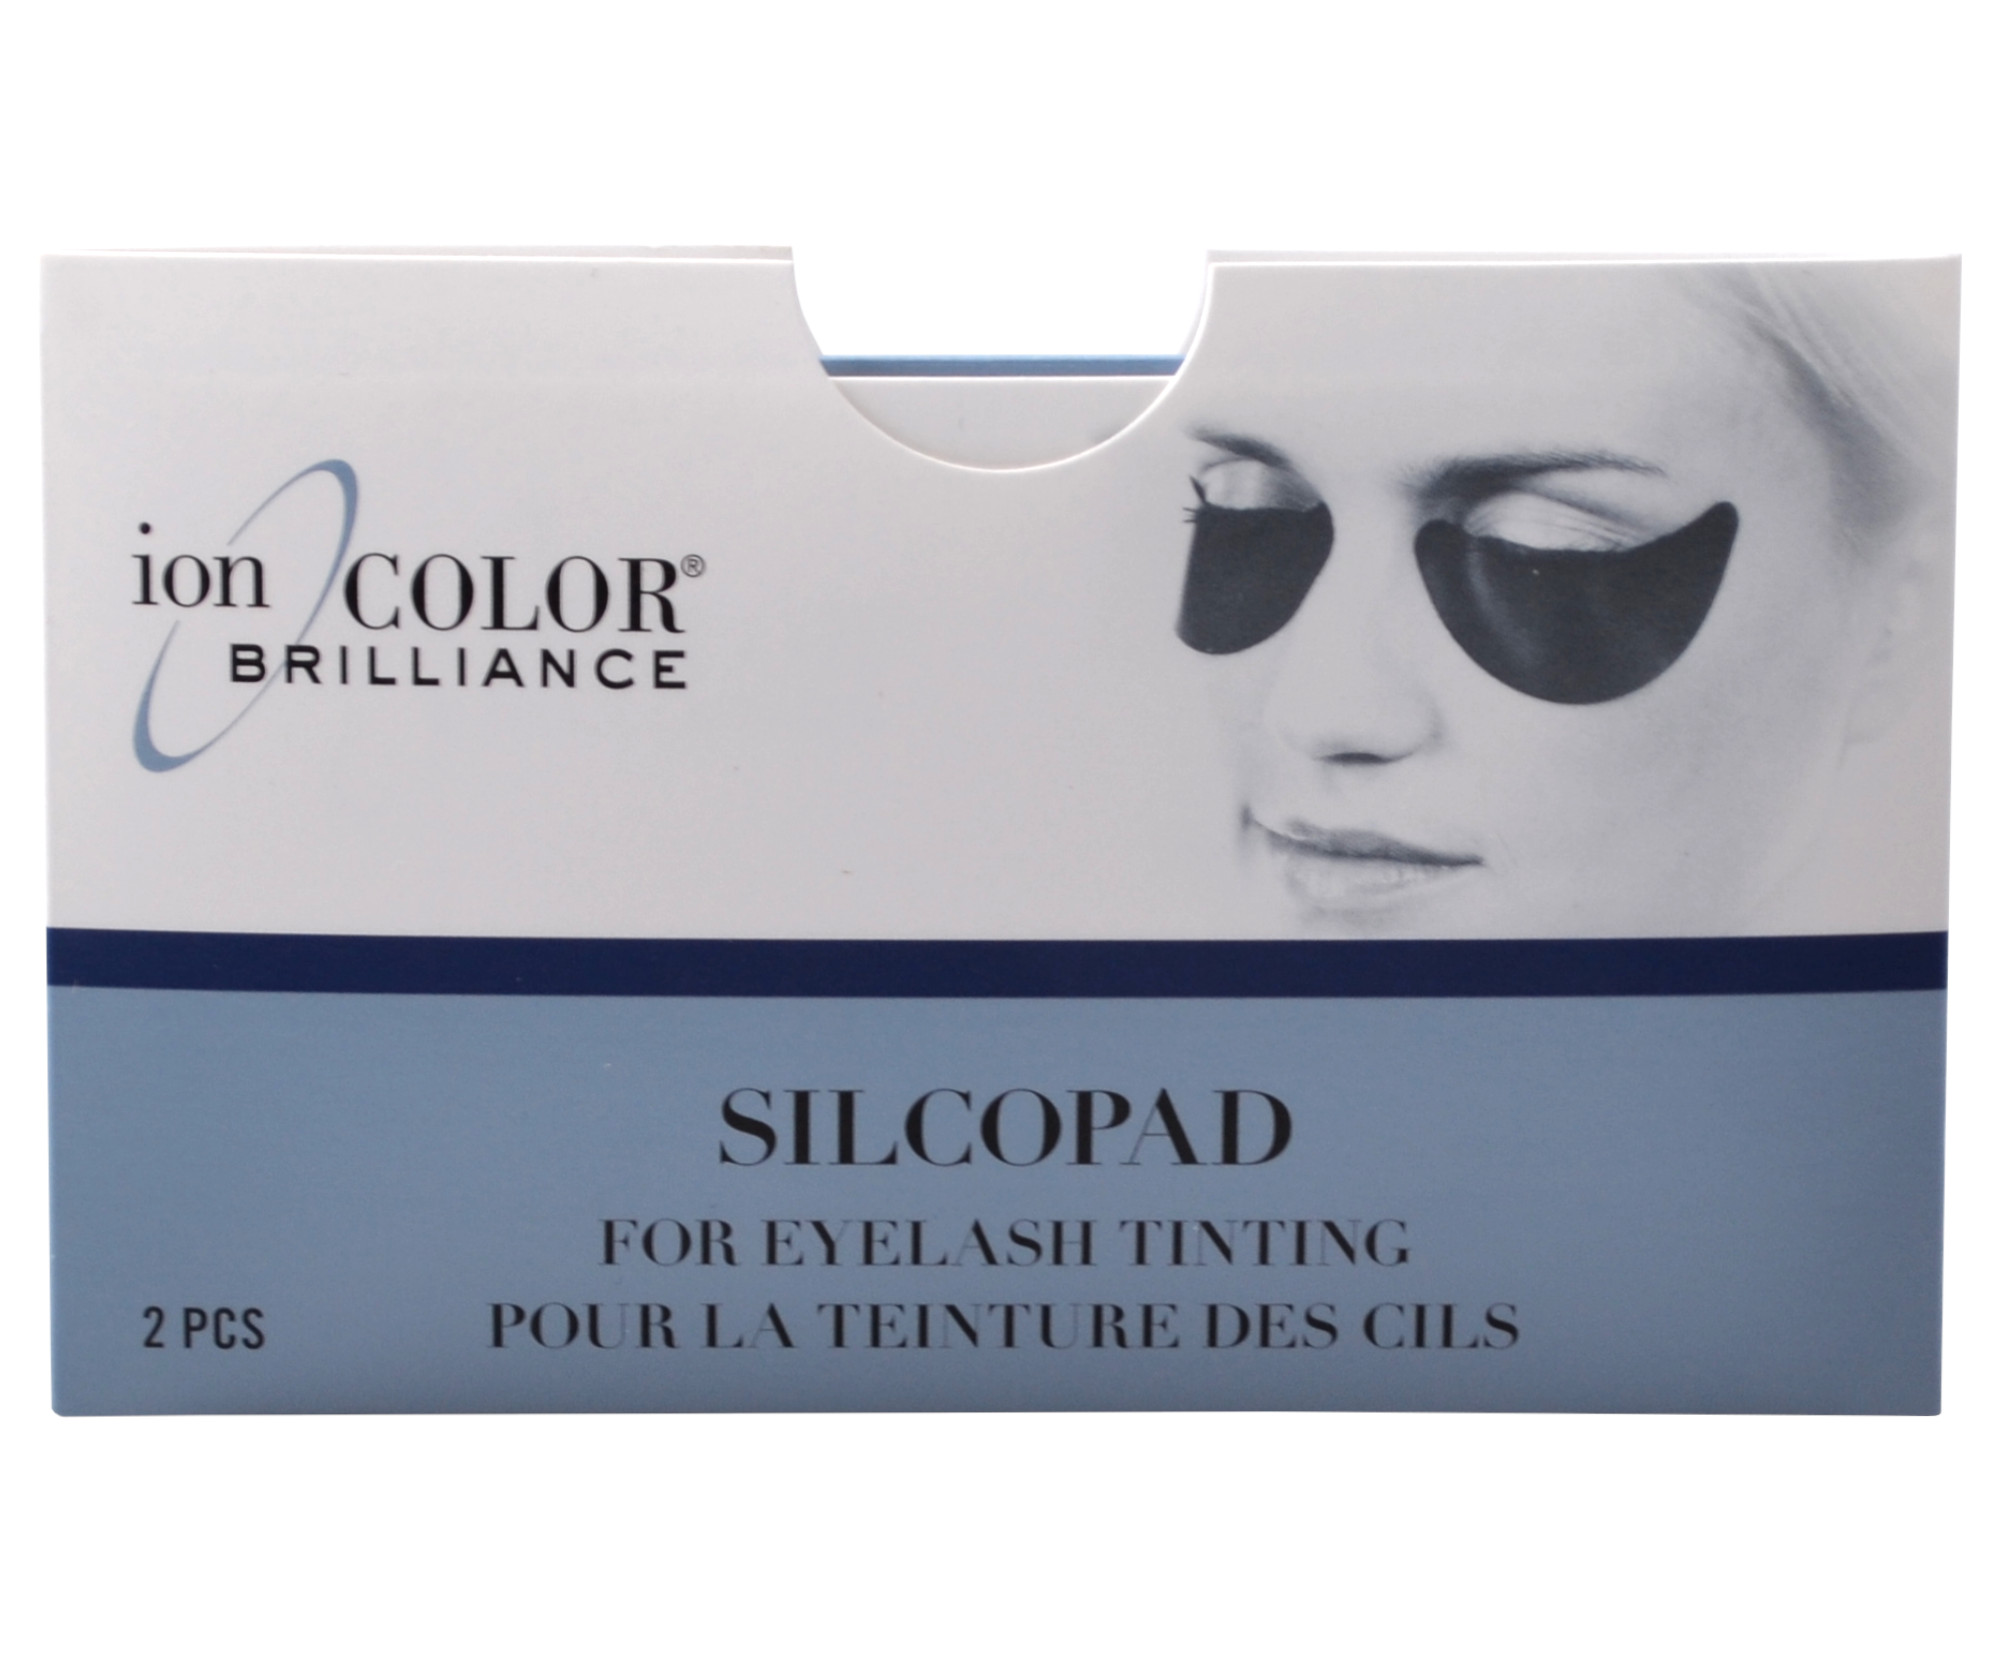 Ochranné silikonové podložky pod oči Sibel Silcopad - 2 ks (0002645) + DÁREK ZDARMA